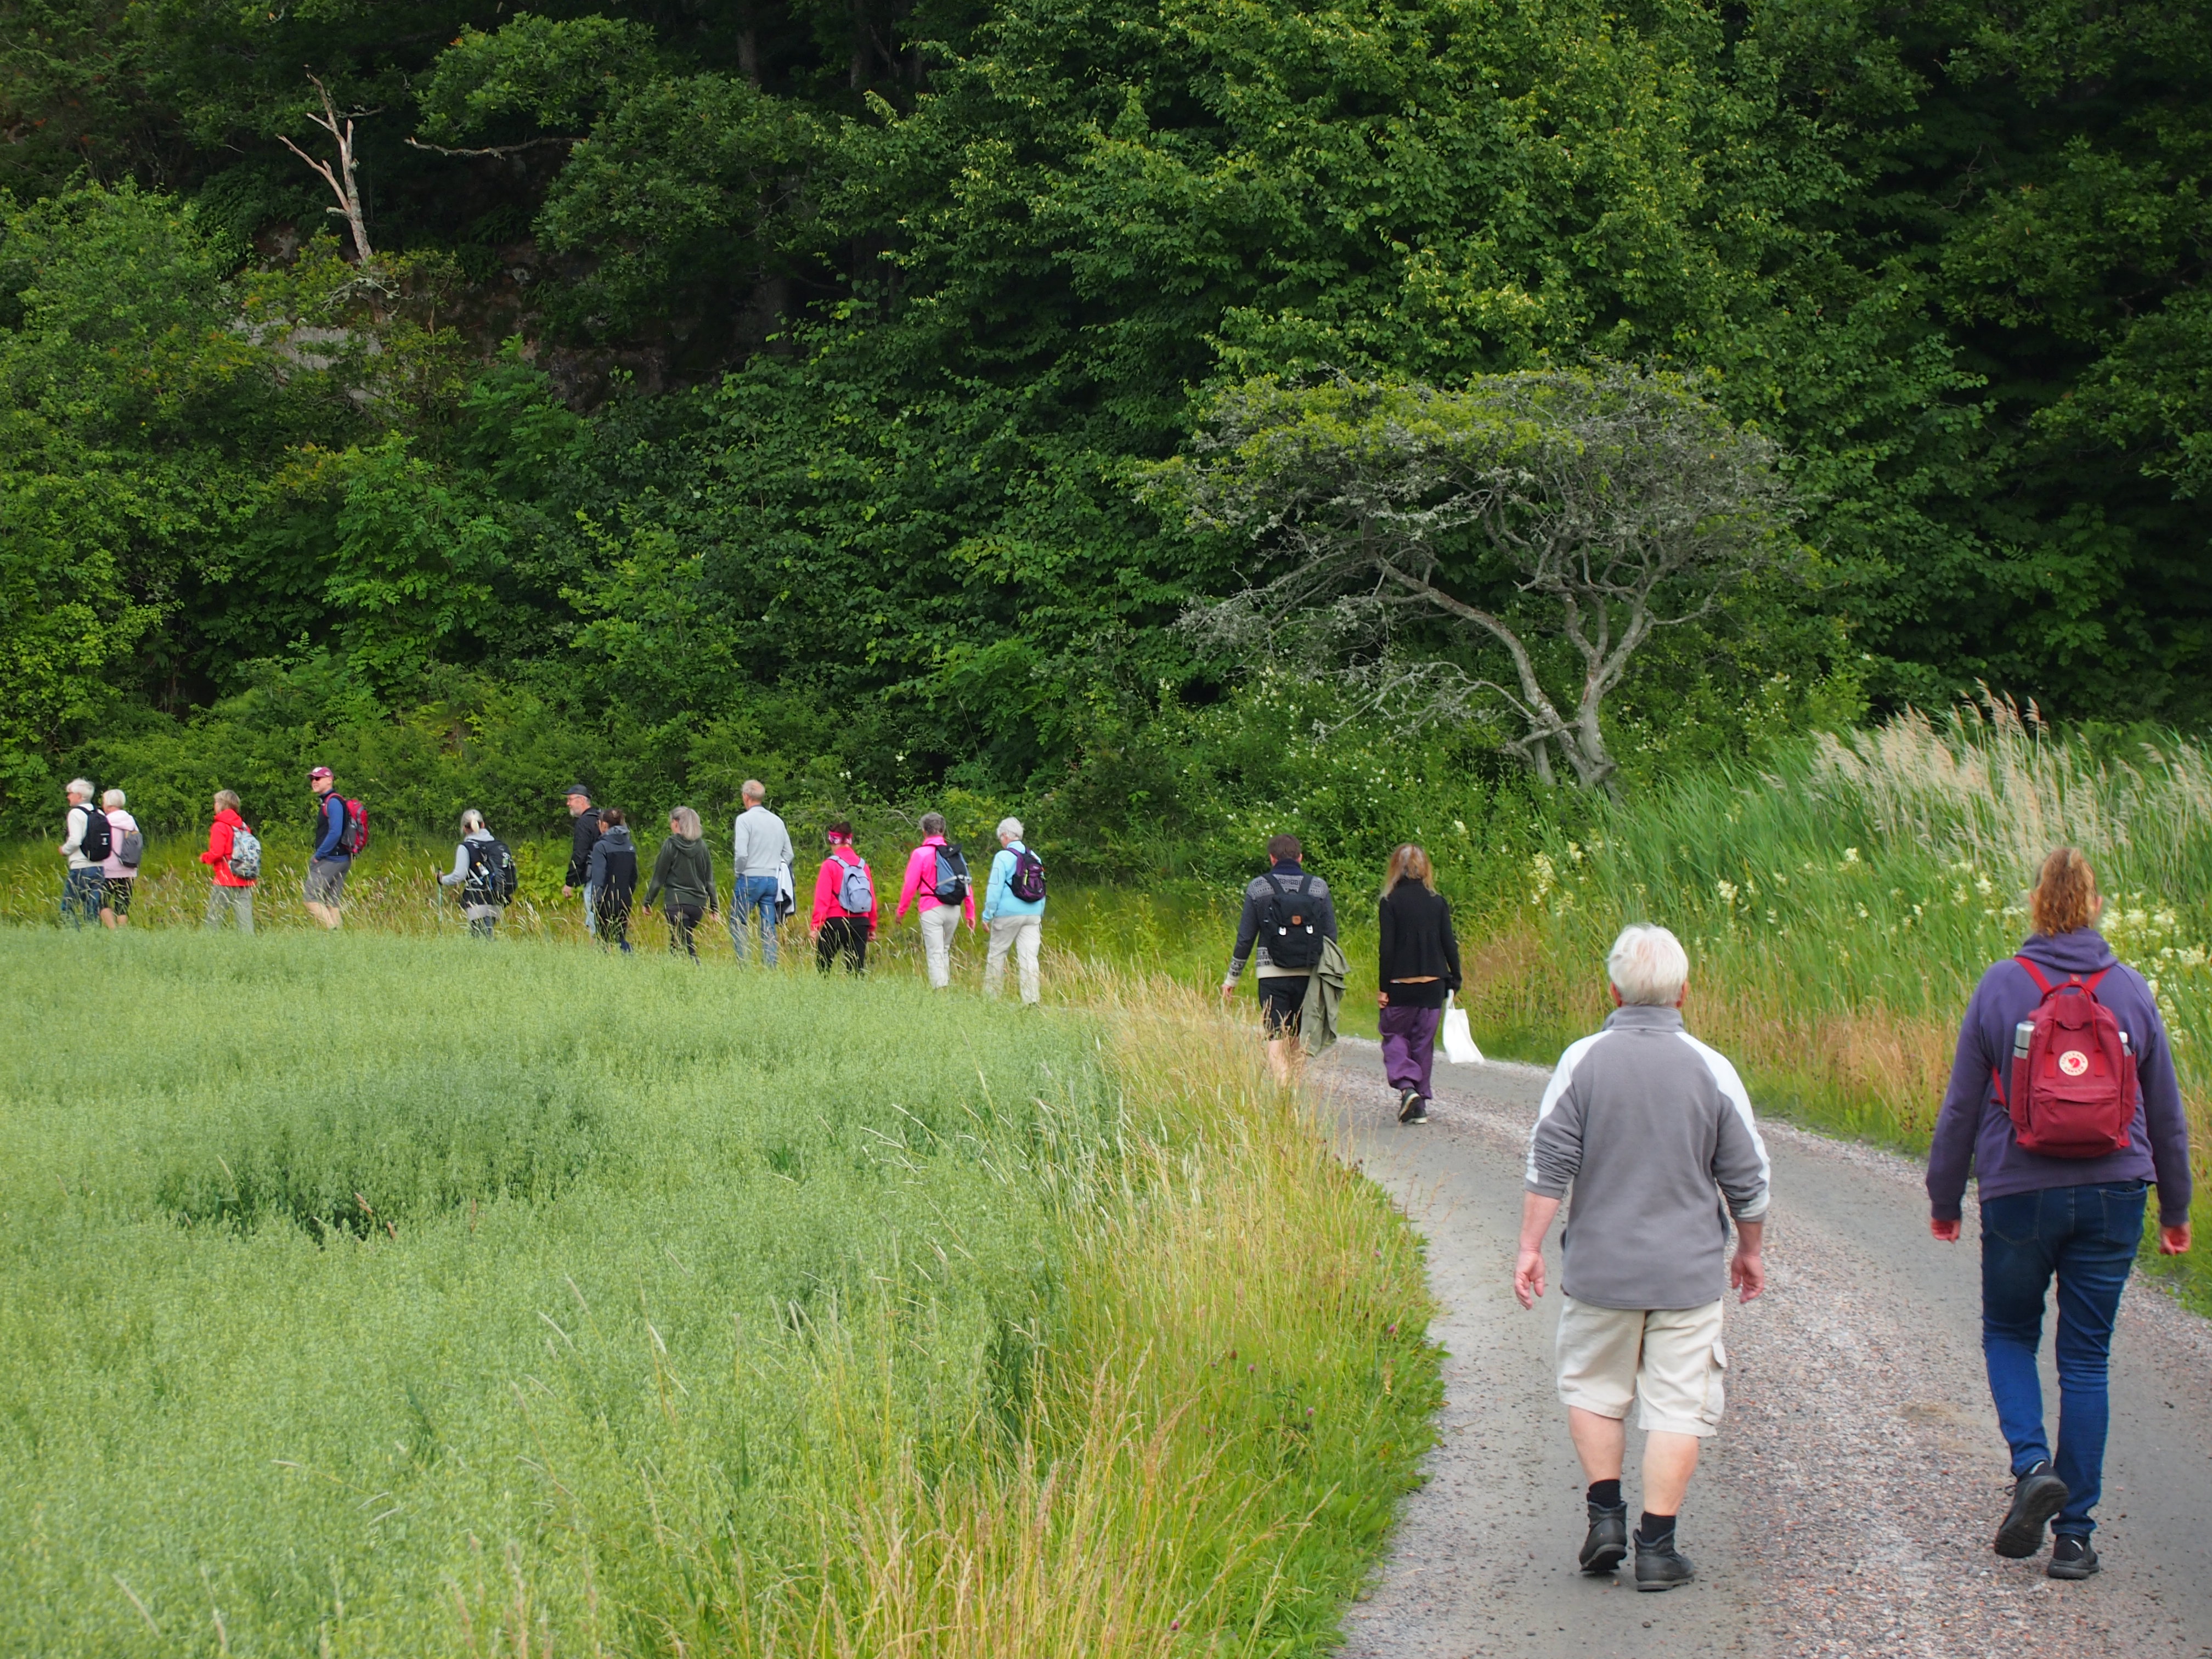 Ett femtontal personer vandrar på en grusväg omgiven av grönska